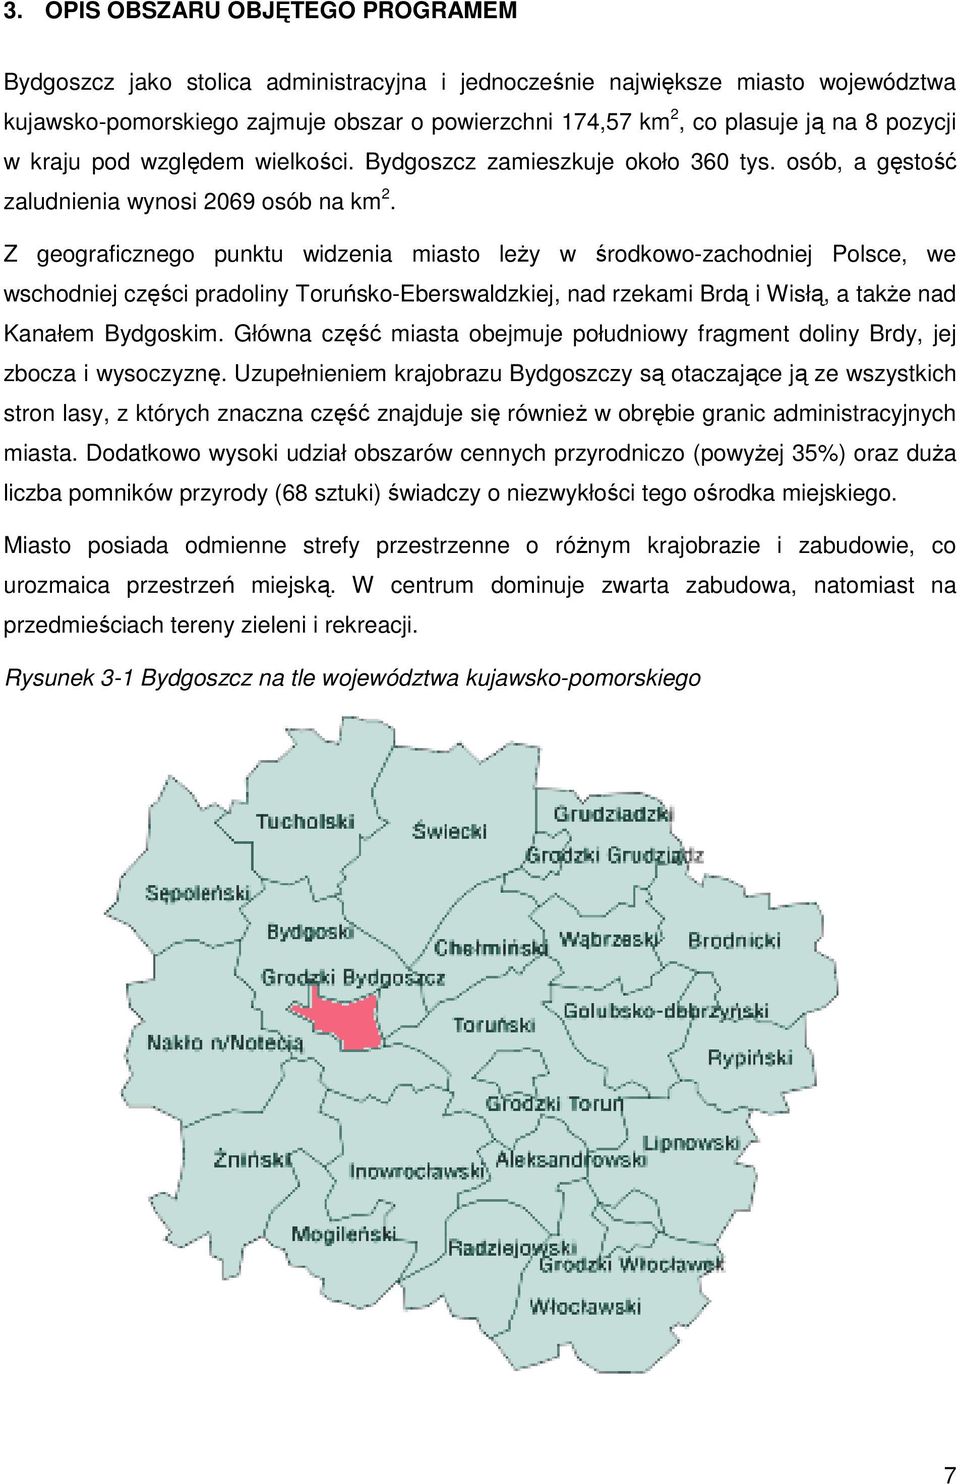 Z geograficznego punktu widzenia miasto leŝy w środkowo-zachodniej Polsce, we wschodniej części pradoliny Toruńsko-Eberswaldzkiej, nad rzekami Brdą i Wisłą, a takŝe nad Kanałem Bydgoskim.